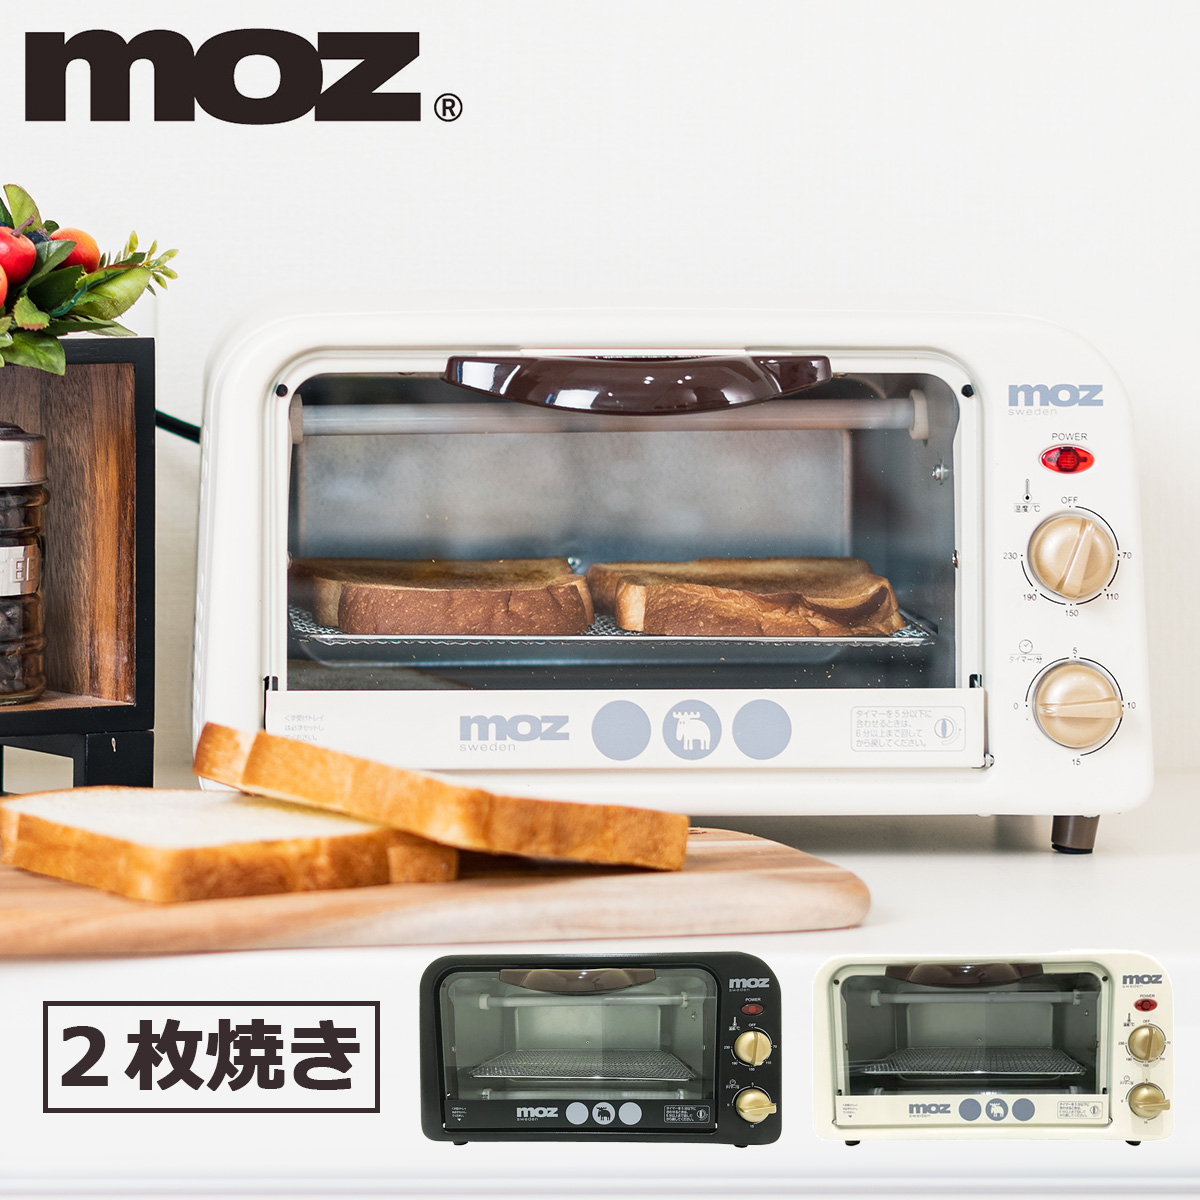 モズ オーブントースター 2枚 EF-LC31 moz トースター 食パン おいしい